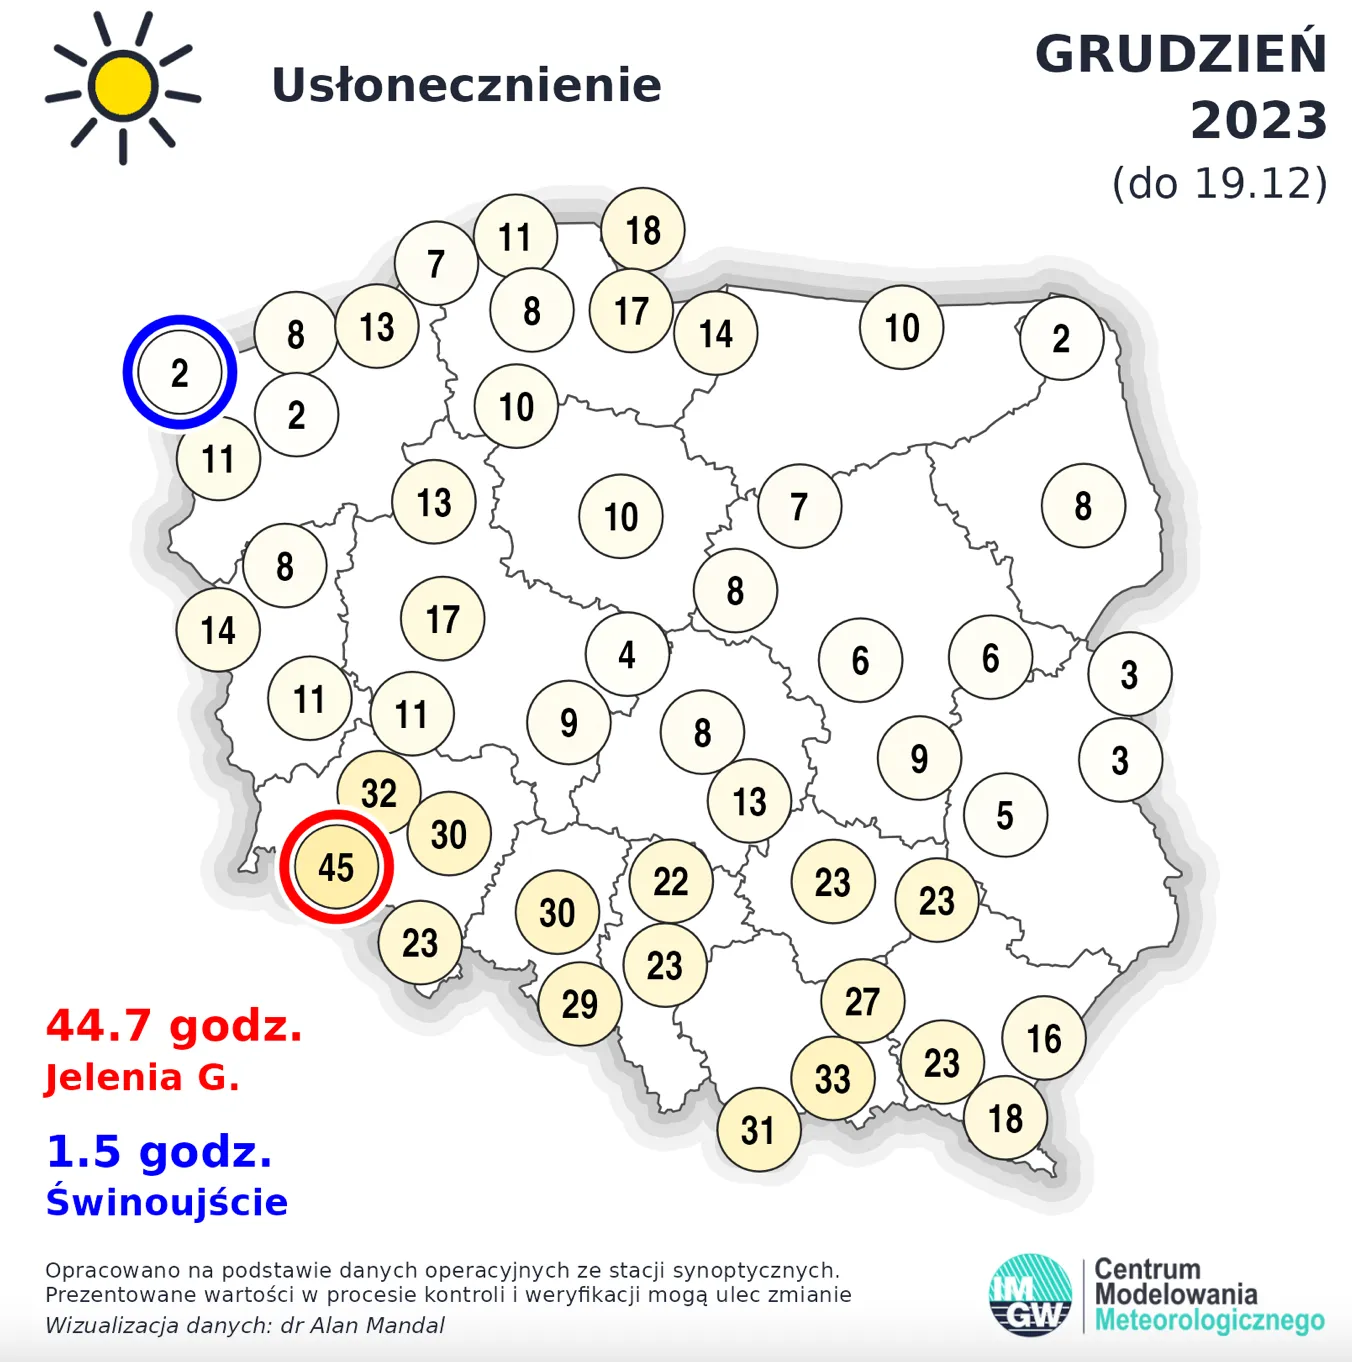 Яка погода була у грудні в містах Польщі 